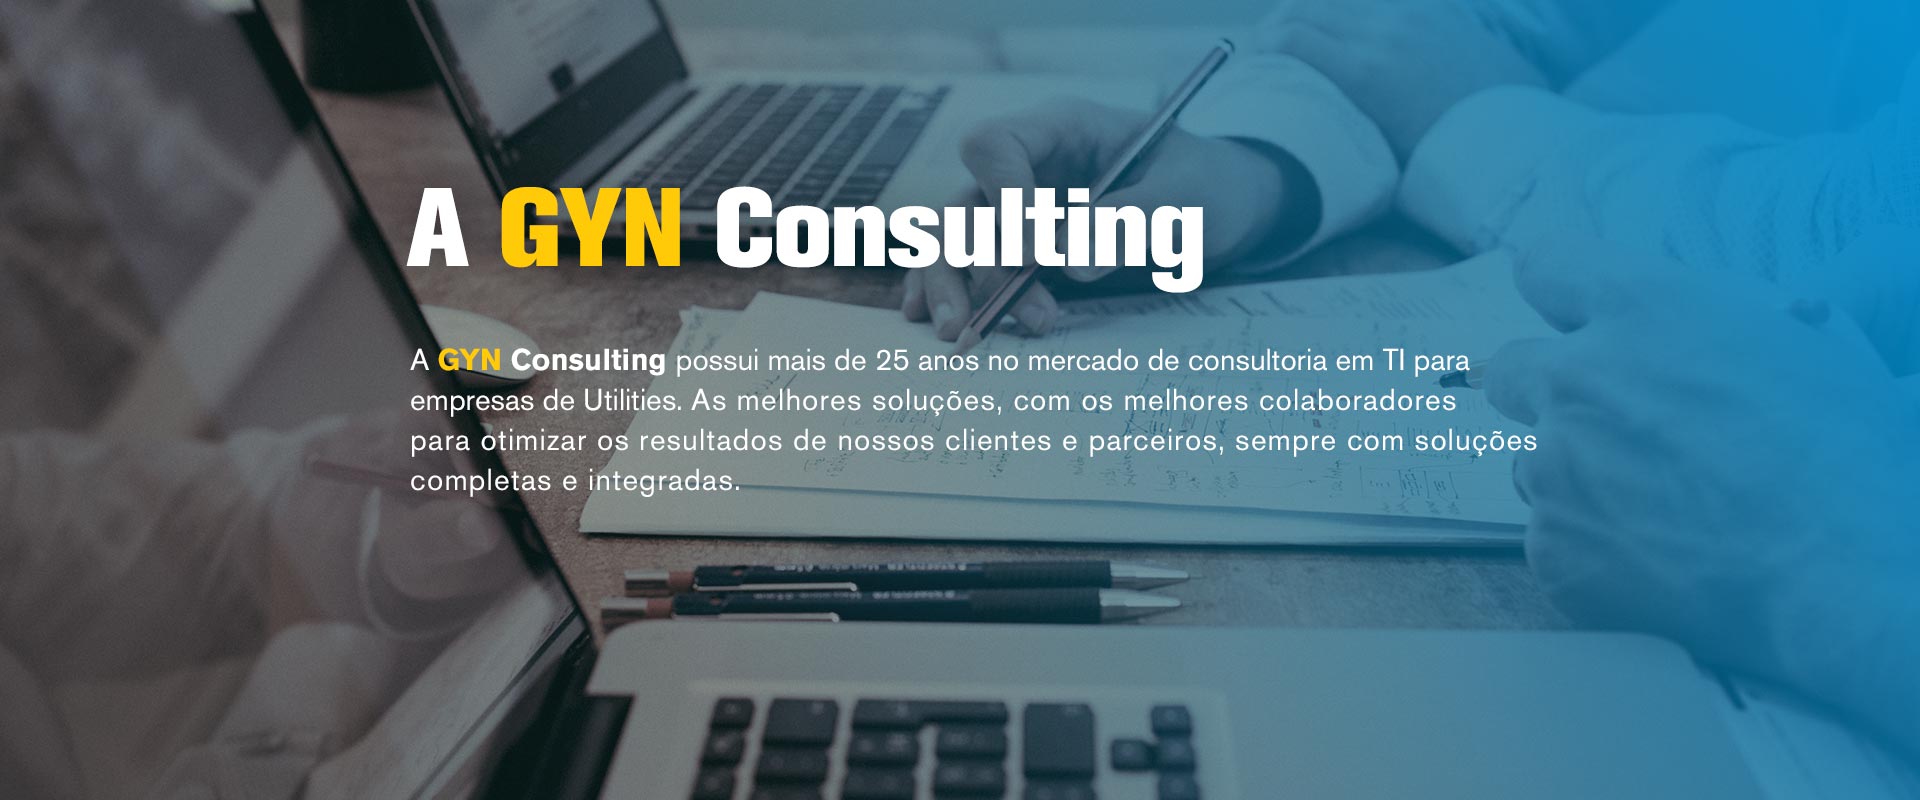 A GYN Consulting possui mais de 25 anos no mercado de consultoria em TI para empresas de Utilities. As melhores soluções, com os melhores colaboradores para otimizar os resultados de nossos clientes e parceiros, sempre com soluções completas e integradas.